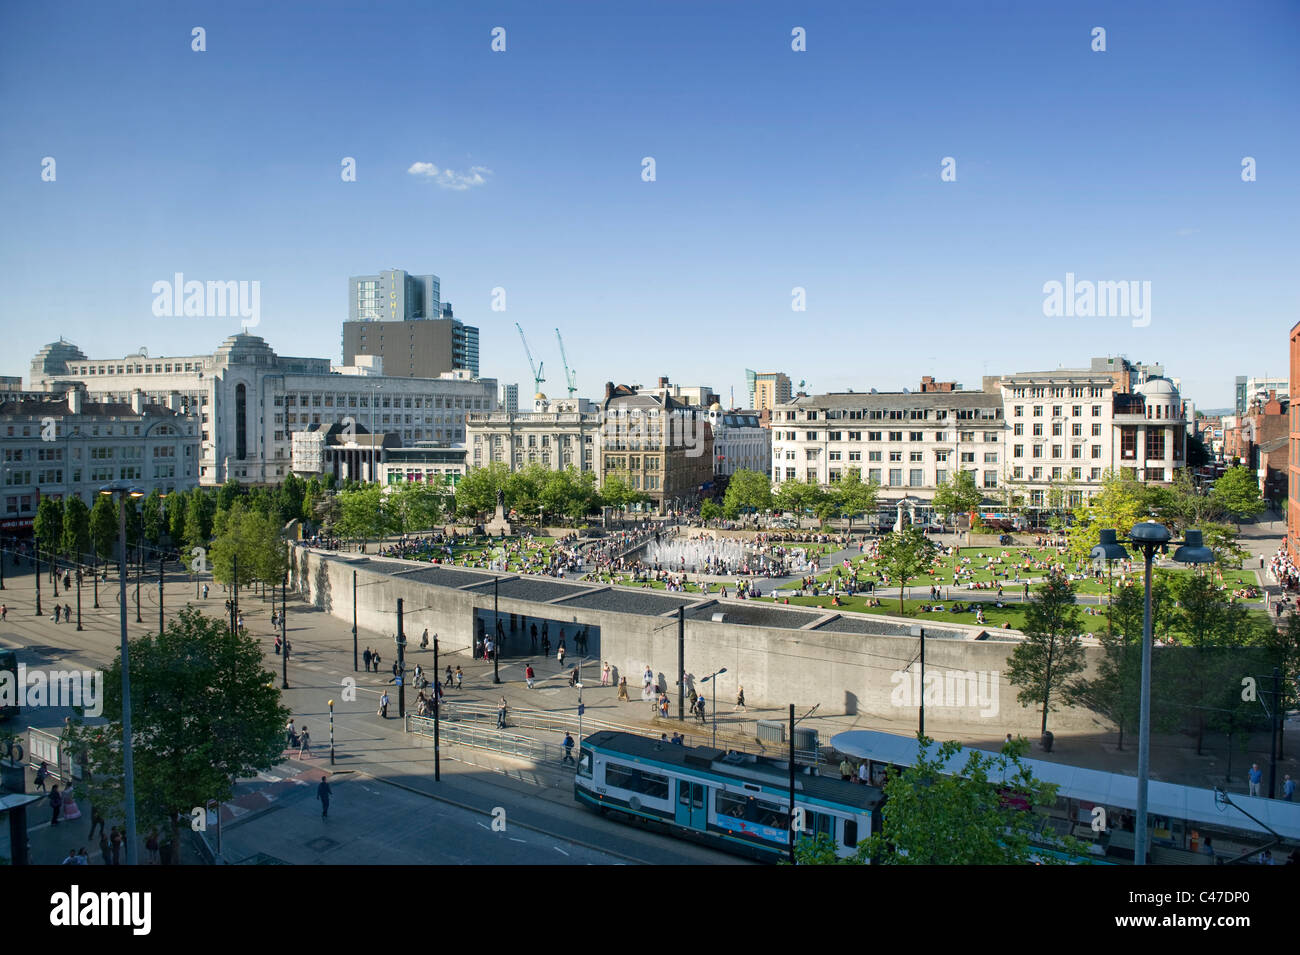 Une vue sur les jardins de Piccadilly, Manchester, lors d'une journée ensoleillée. Banque D'Images